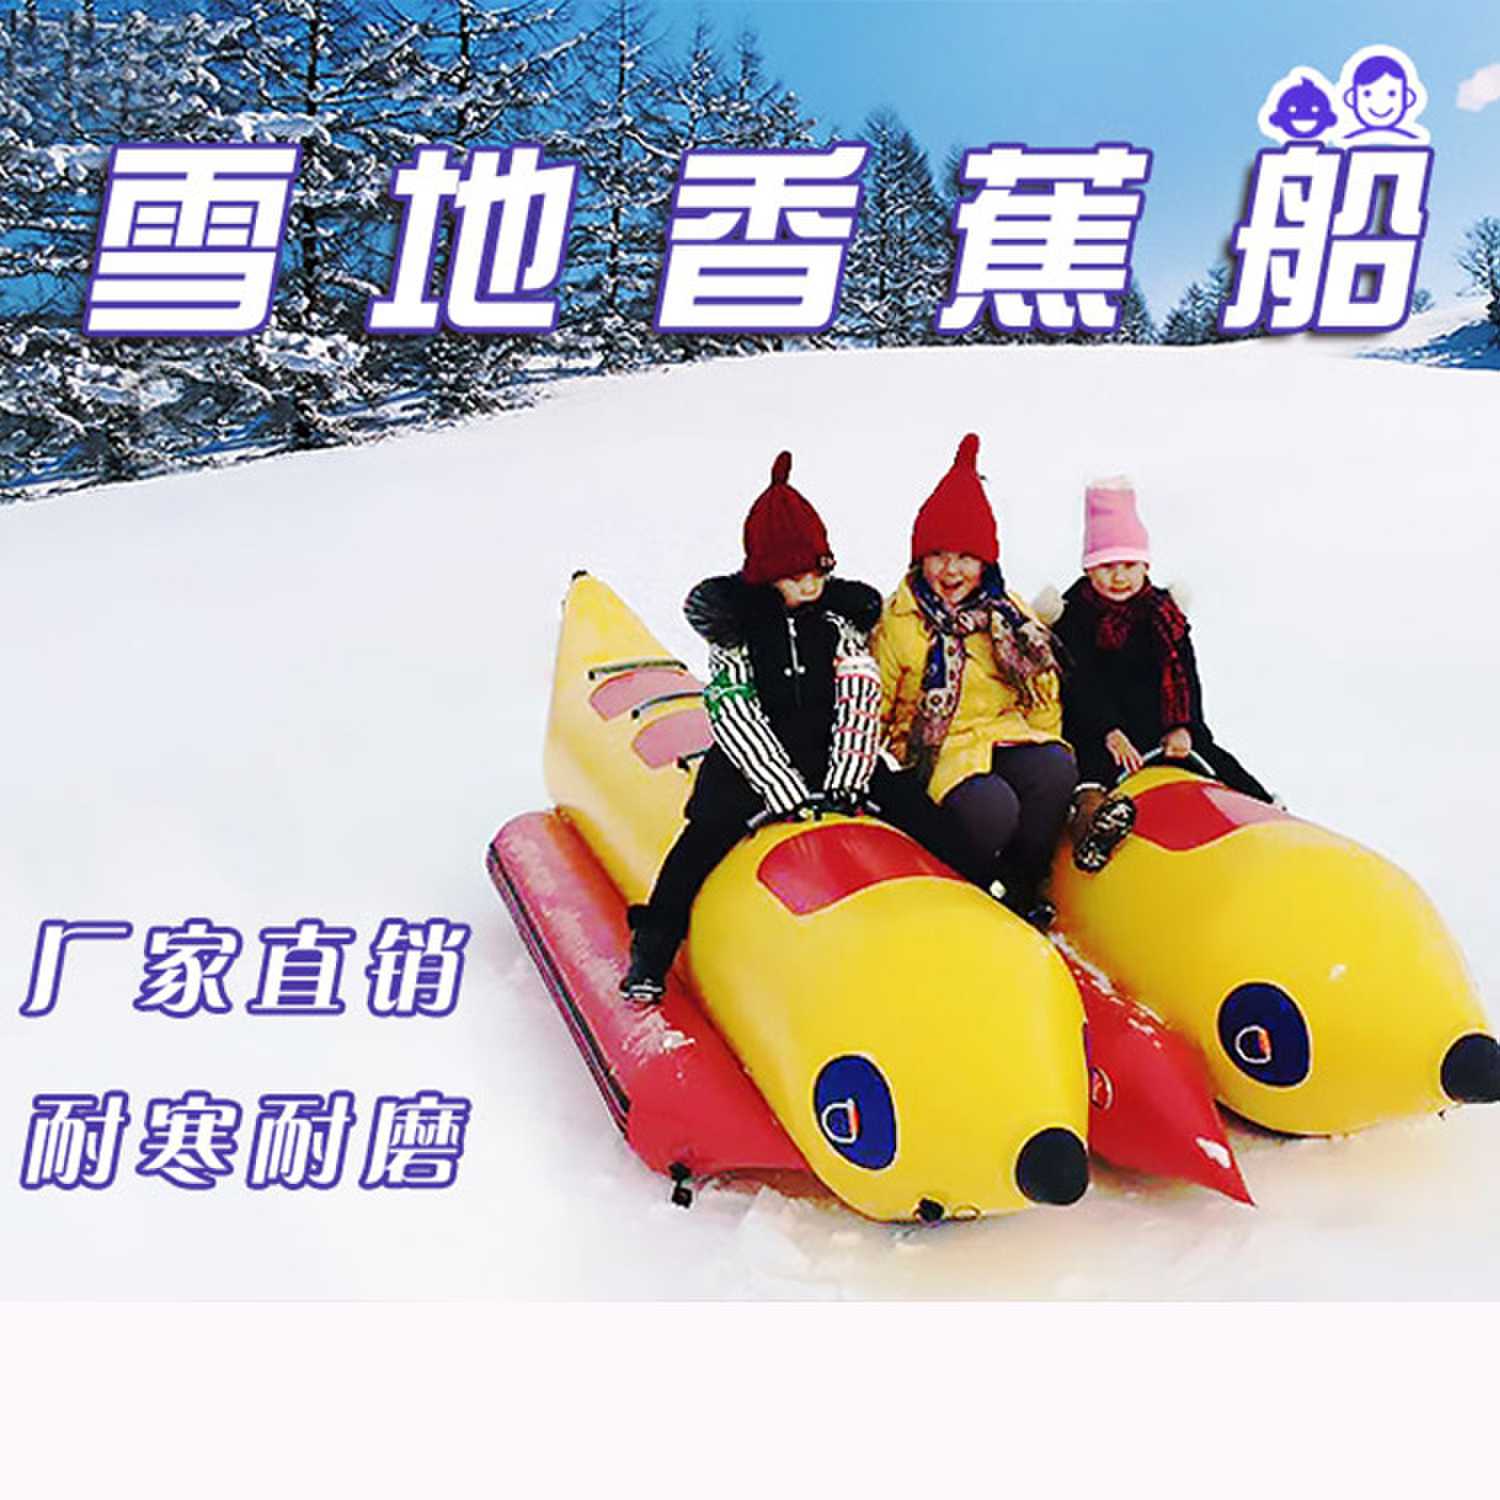 冰雪乐园游乐设备 无动力雪地香蕉船 多人游乐项目 jy-643多功能游玩设备